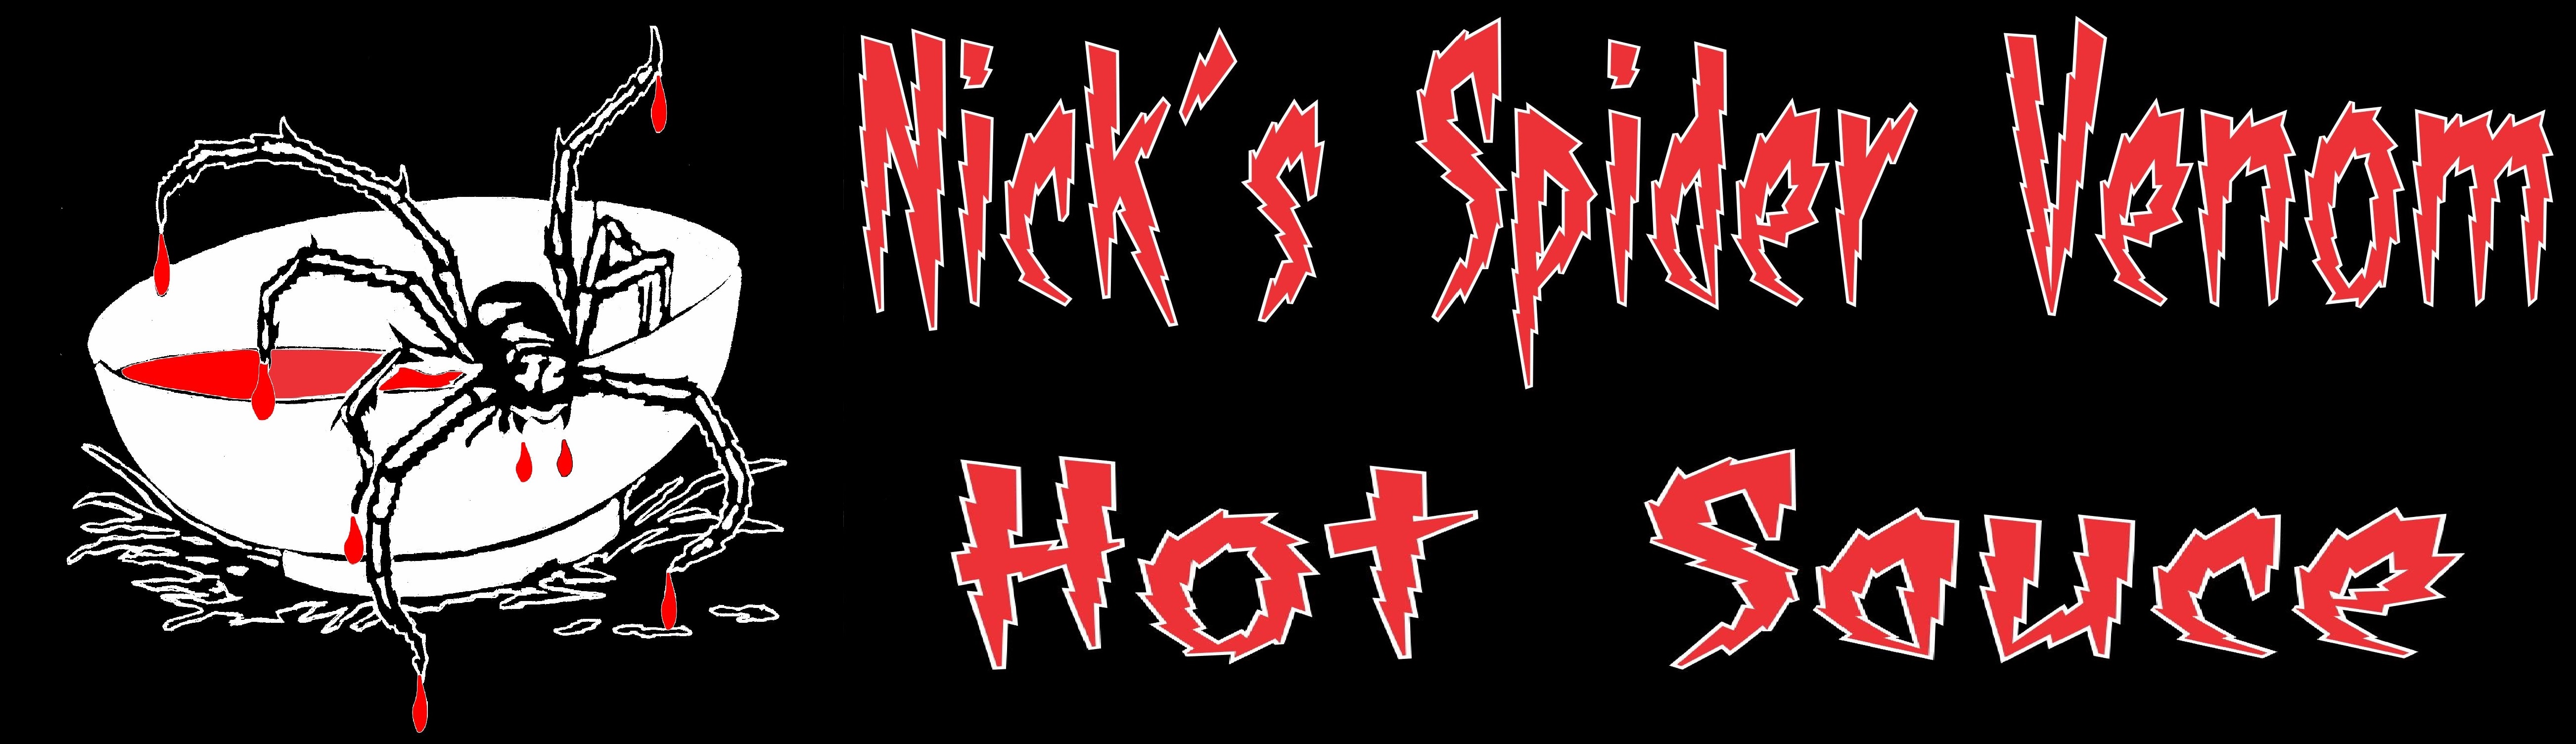 Nicks Spider Venom Banner